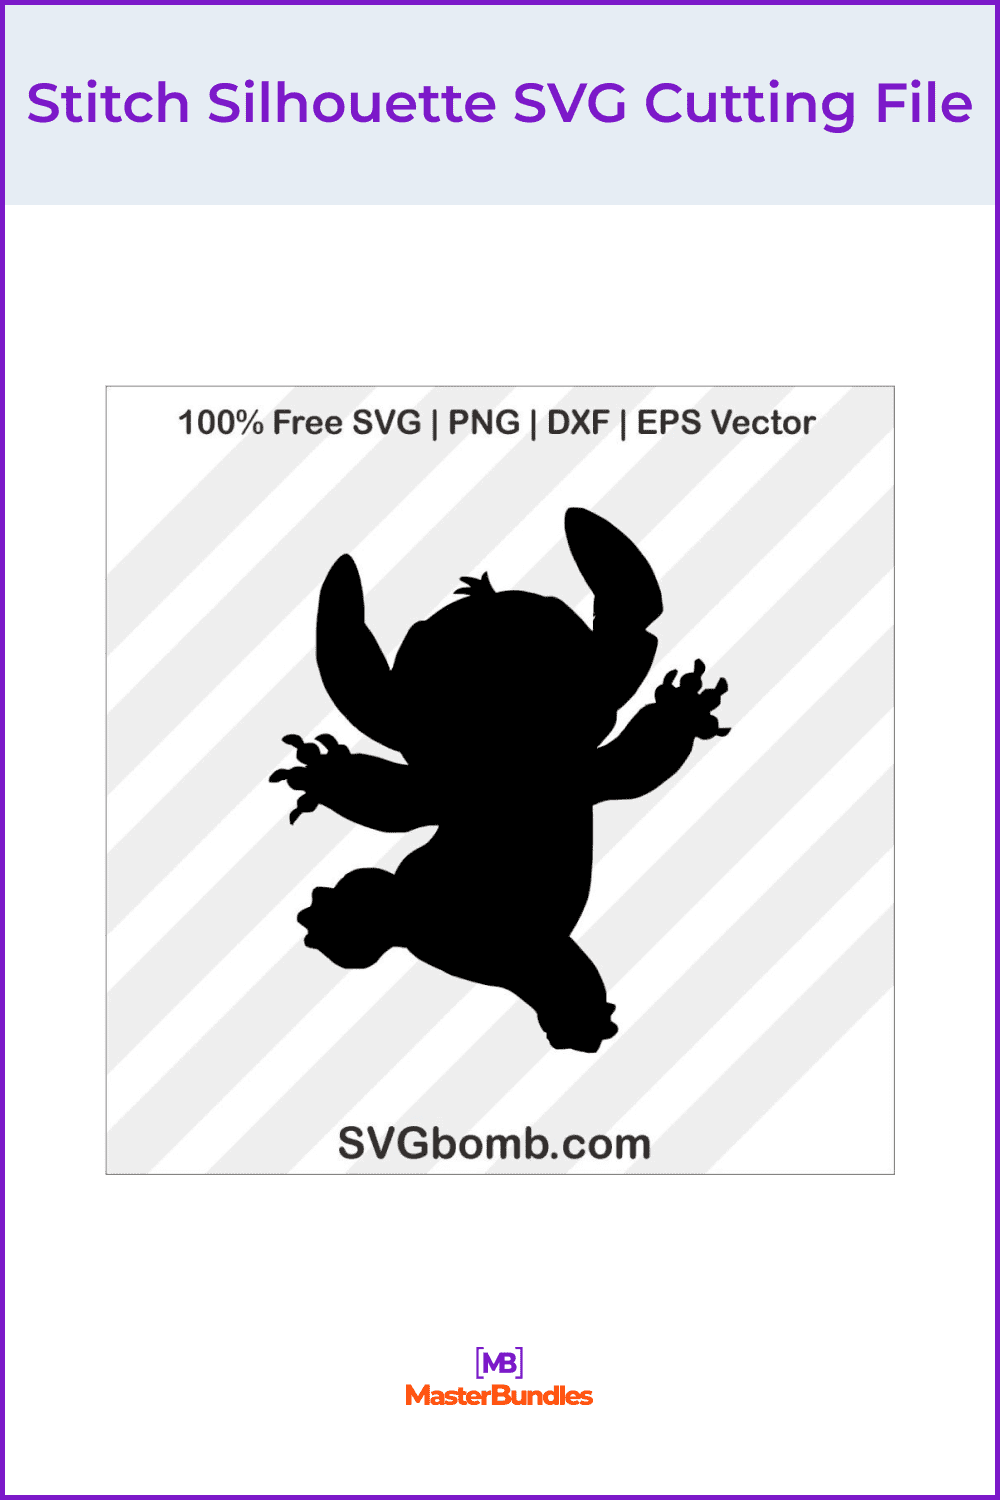 Stitch Silhouette SVG Cutting File.